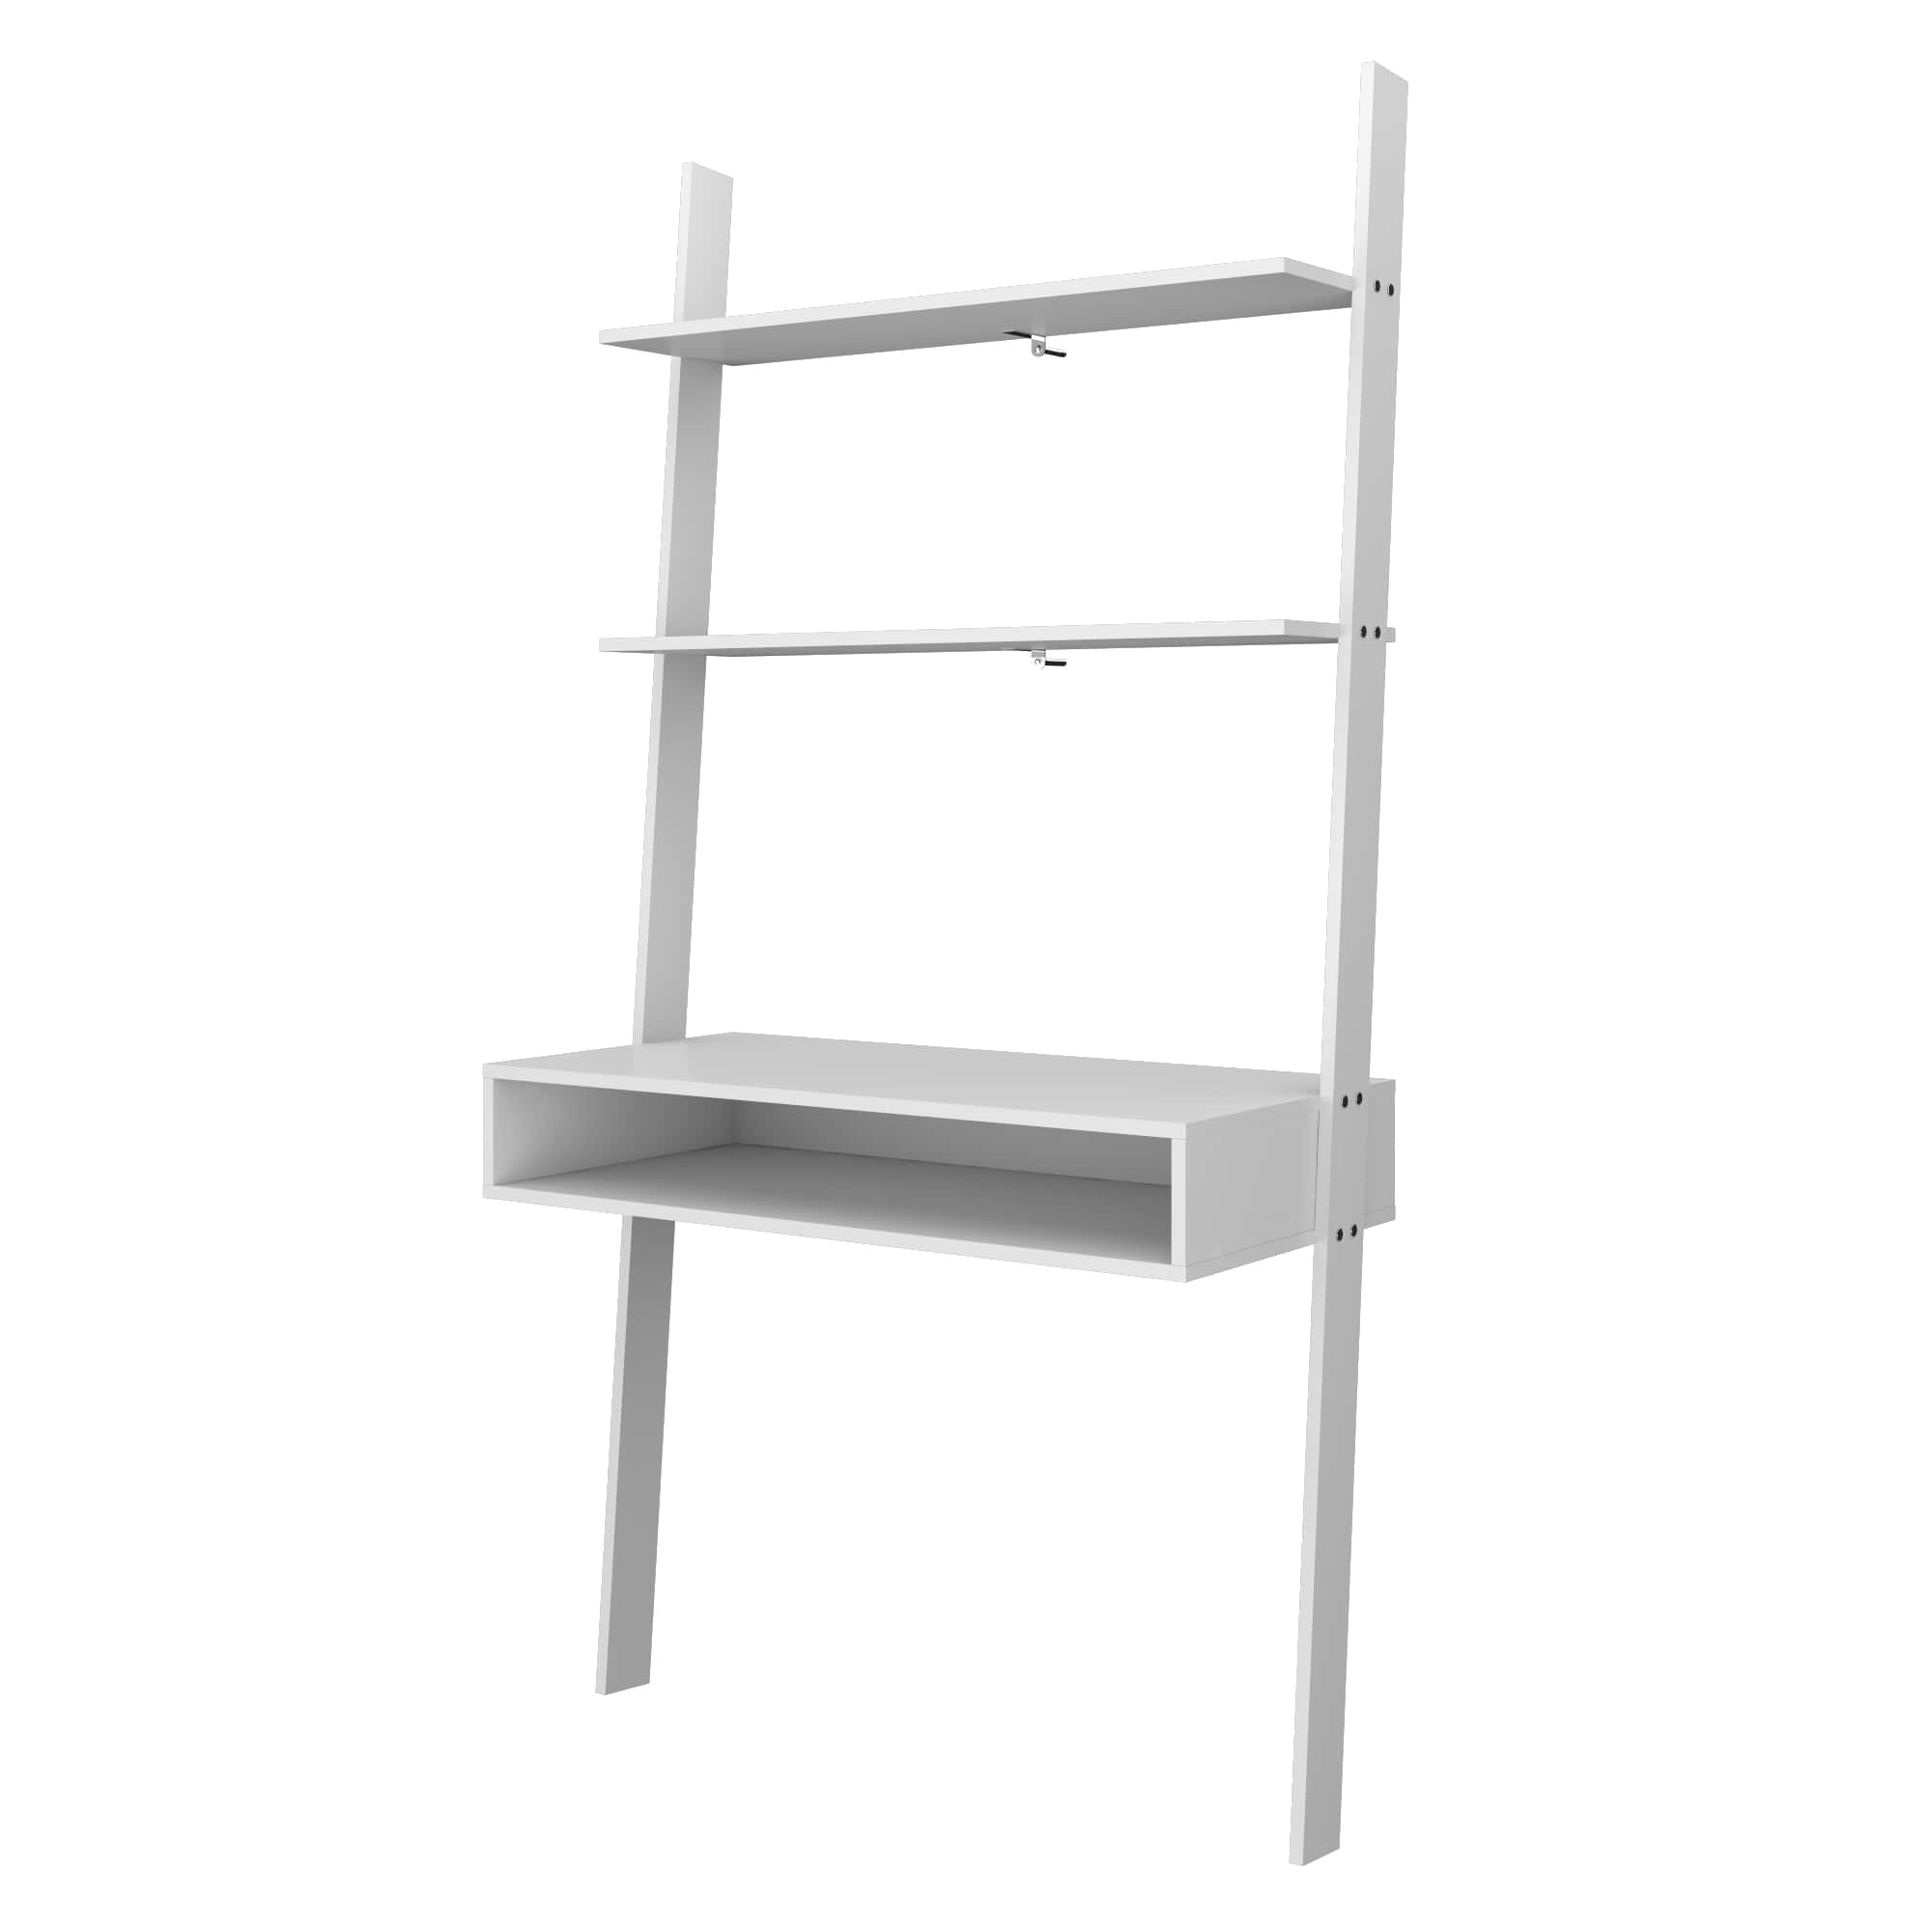 Manhattan Comfort, Cooper Ladder Desk 2 Floating Shelves in White, Width 36.61 in, Height 72.04 in, Depth 17.51 in, Model 193AMC